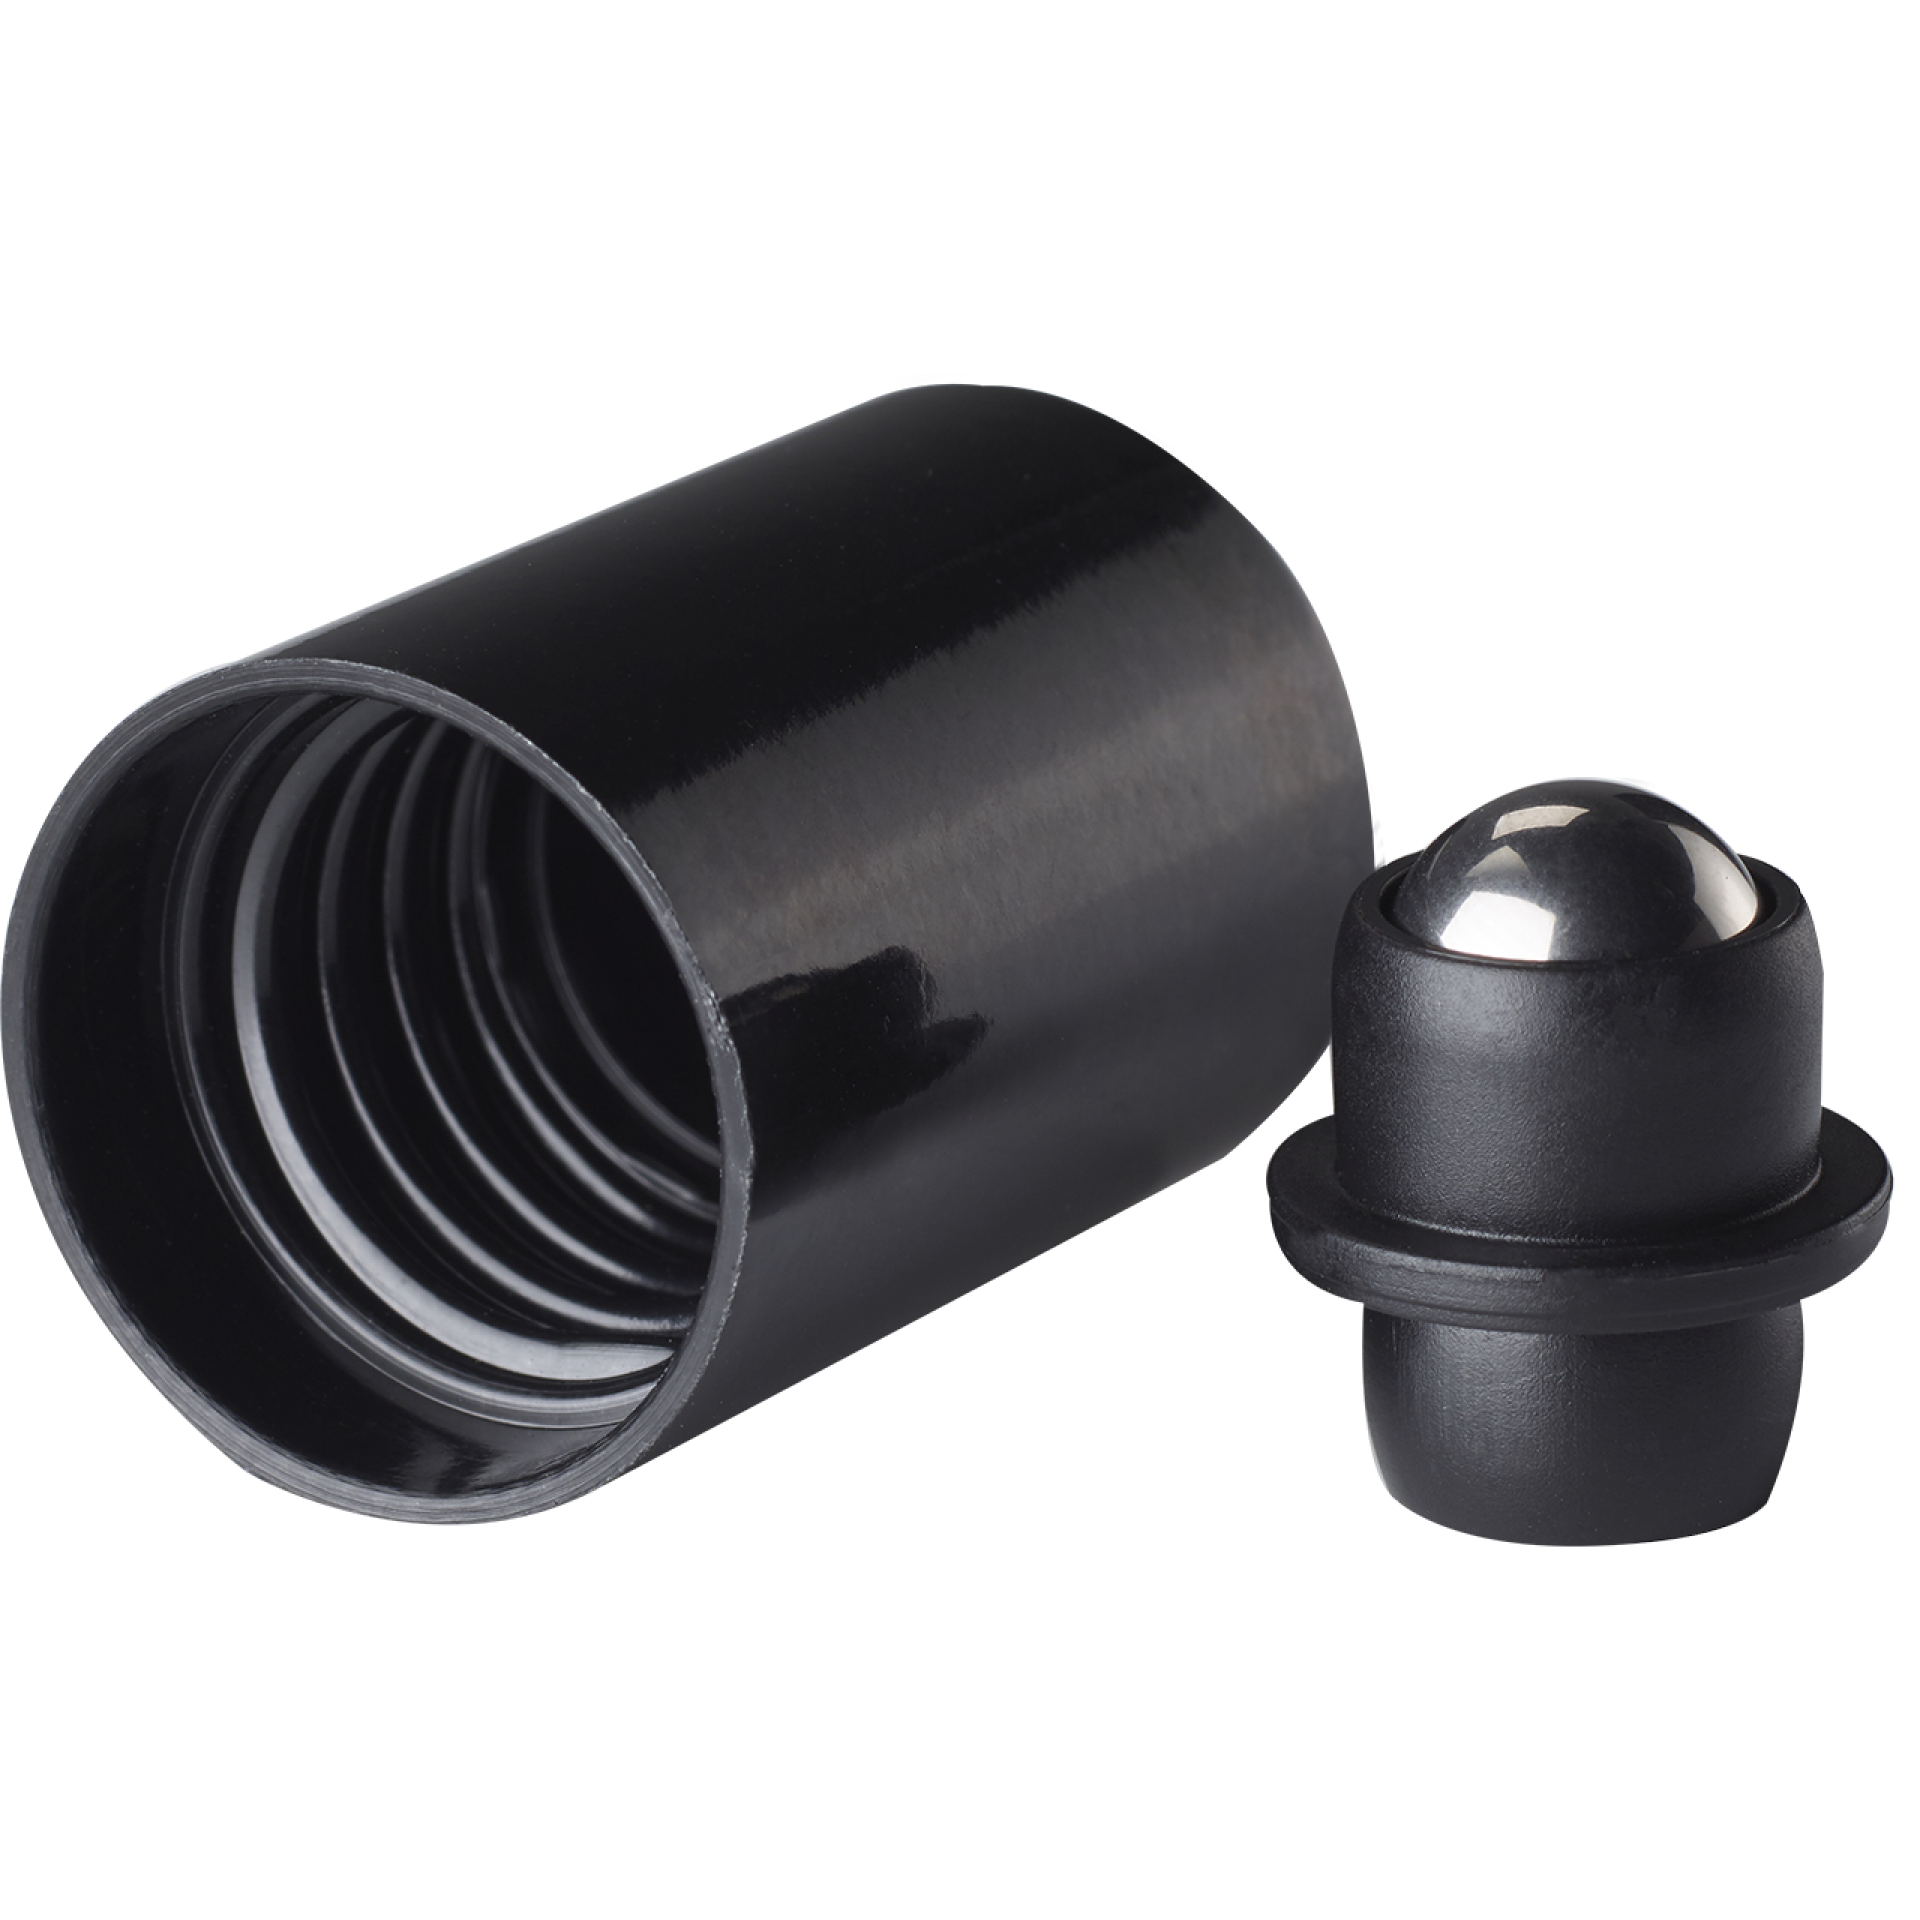 Roll-on cap DIN18, PP, black fitment, stainless steel ball, black cap (dropper bottles)